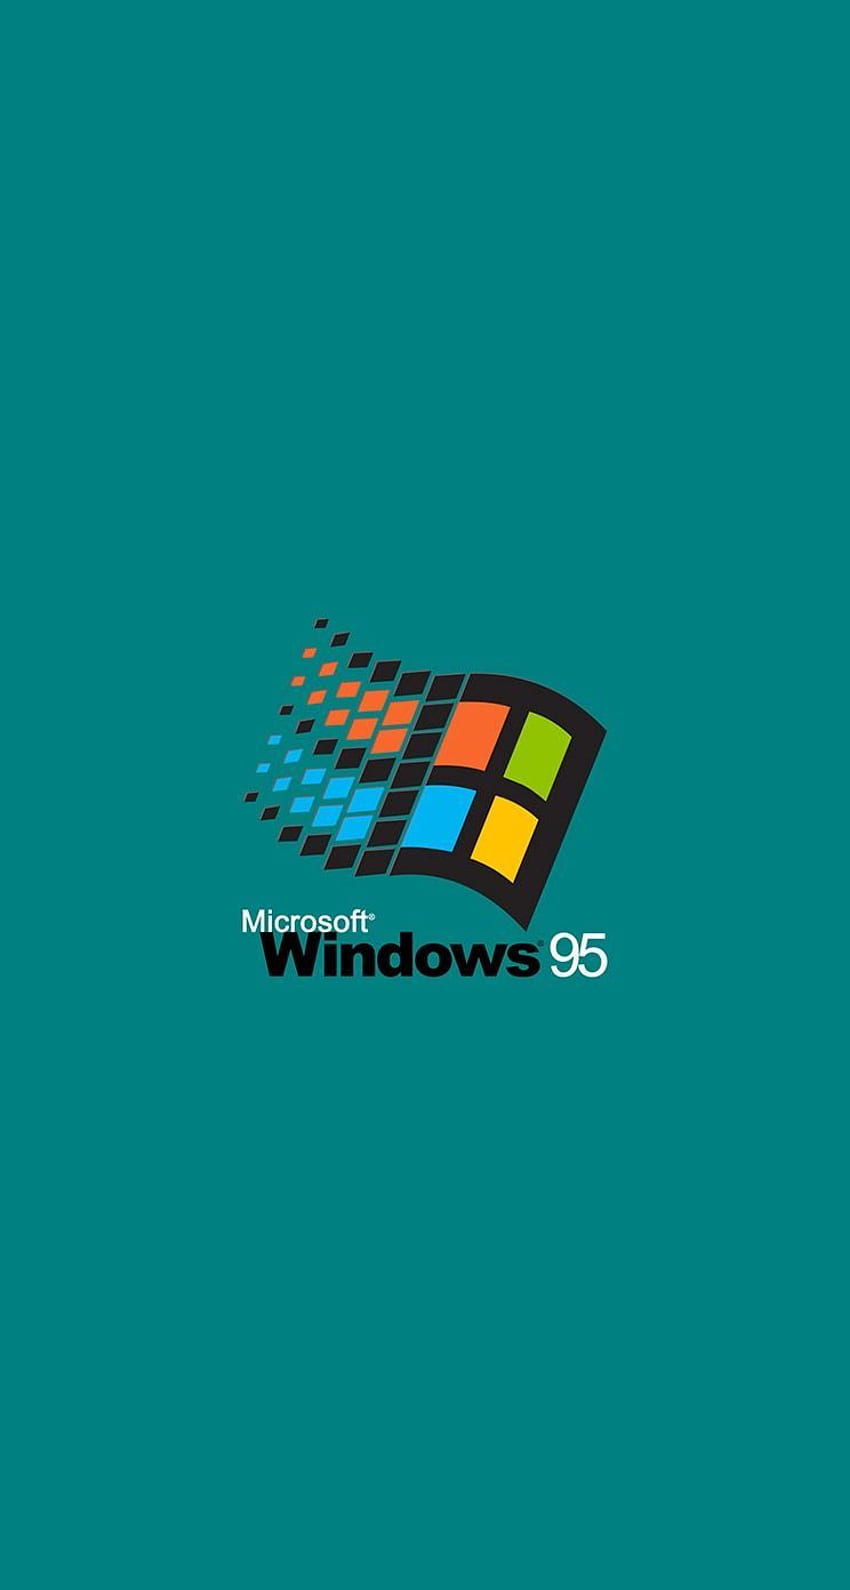 Với phong cách Retro và Turquoise Aesthetic, bộ sưu tập hình nền trên Windows HD sẽ khiến bạn thích mê ngay từ cái nhìn đầu tiên. Những hình nền với tông xanh ngọc bích tươi sáng chắc chắn sẽ làm đẹp màn hình điện thoại của bạn.